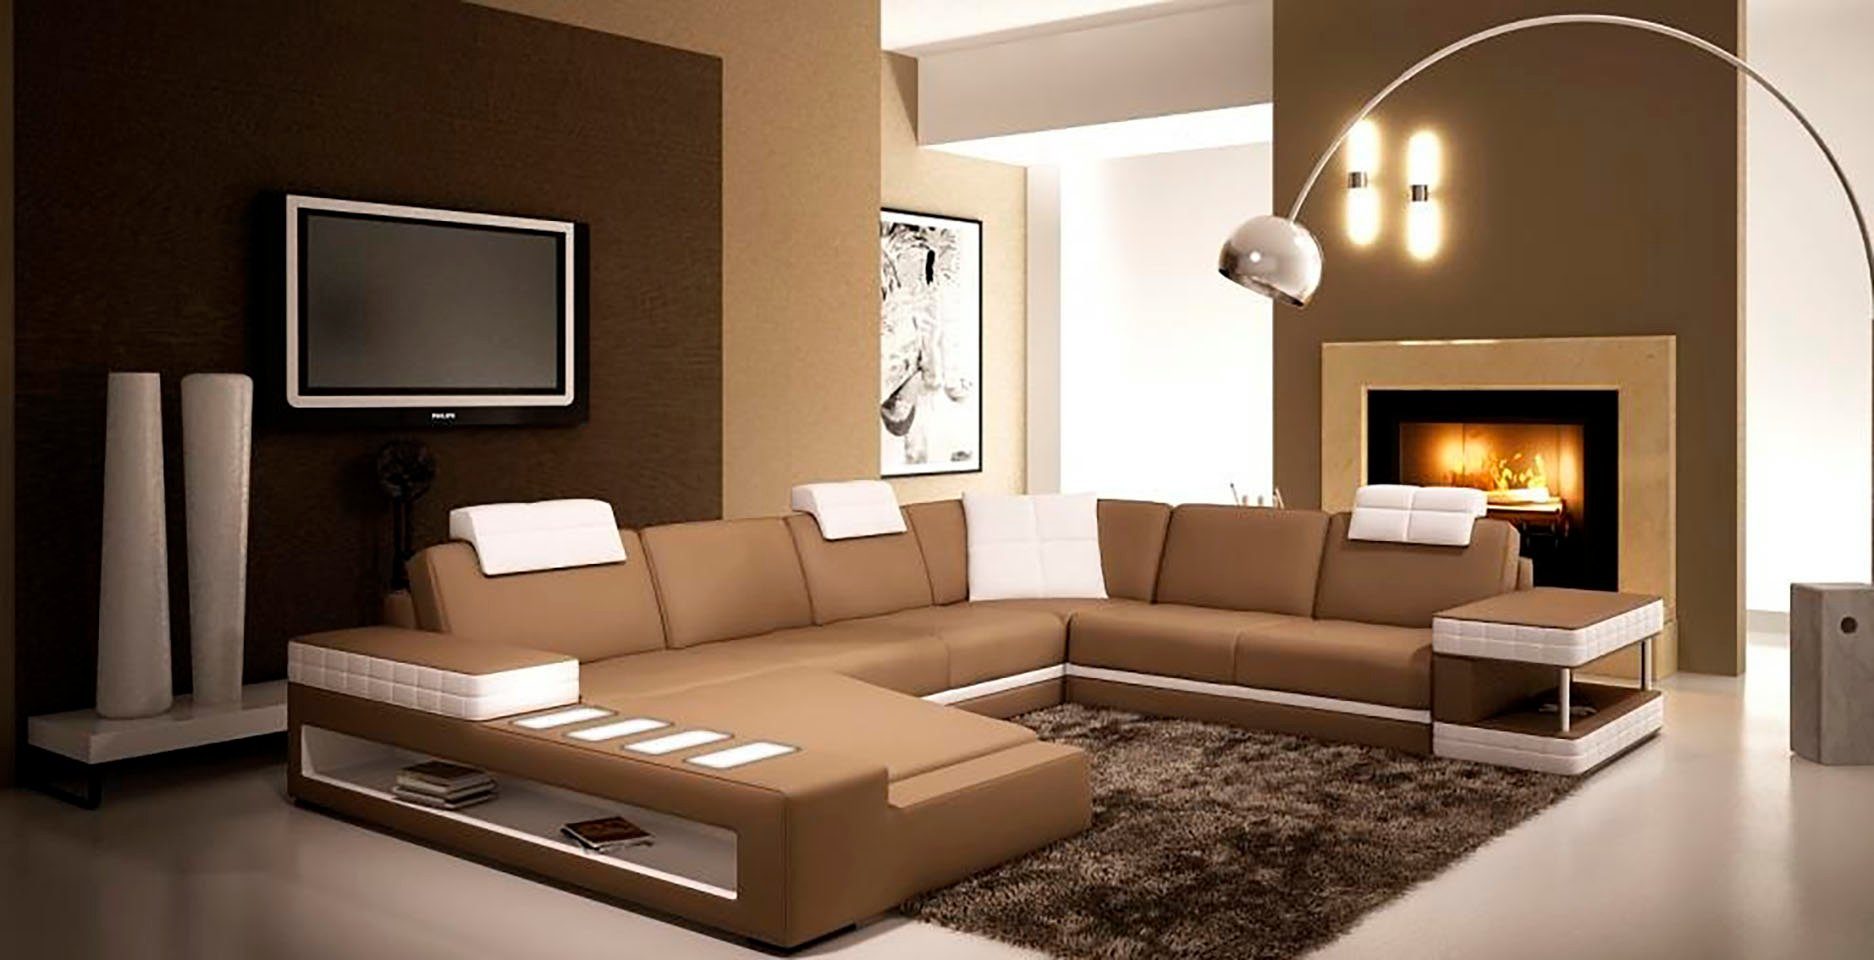 JVmoebel Ecksofa Designer Premium Ecksofa schwarz Eck Couch xxl Modern Neu, Made in Europe